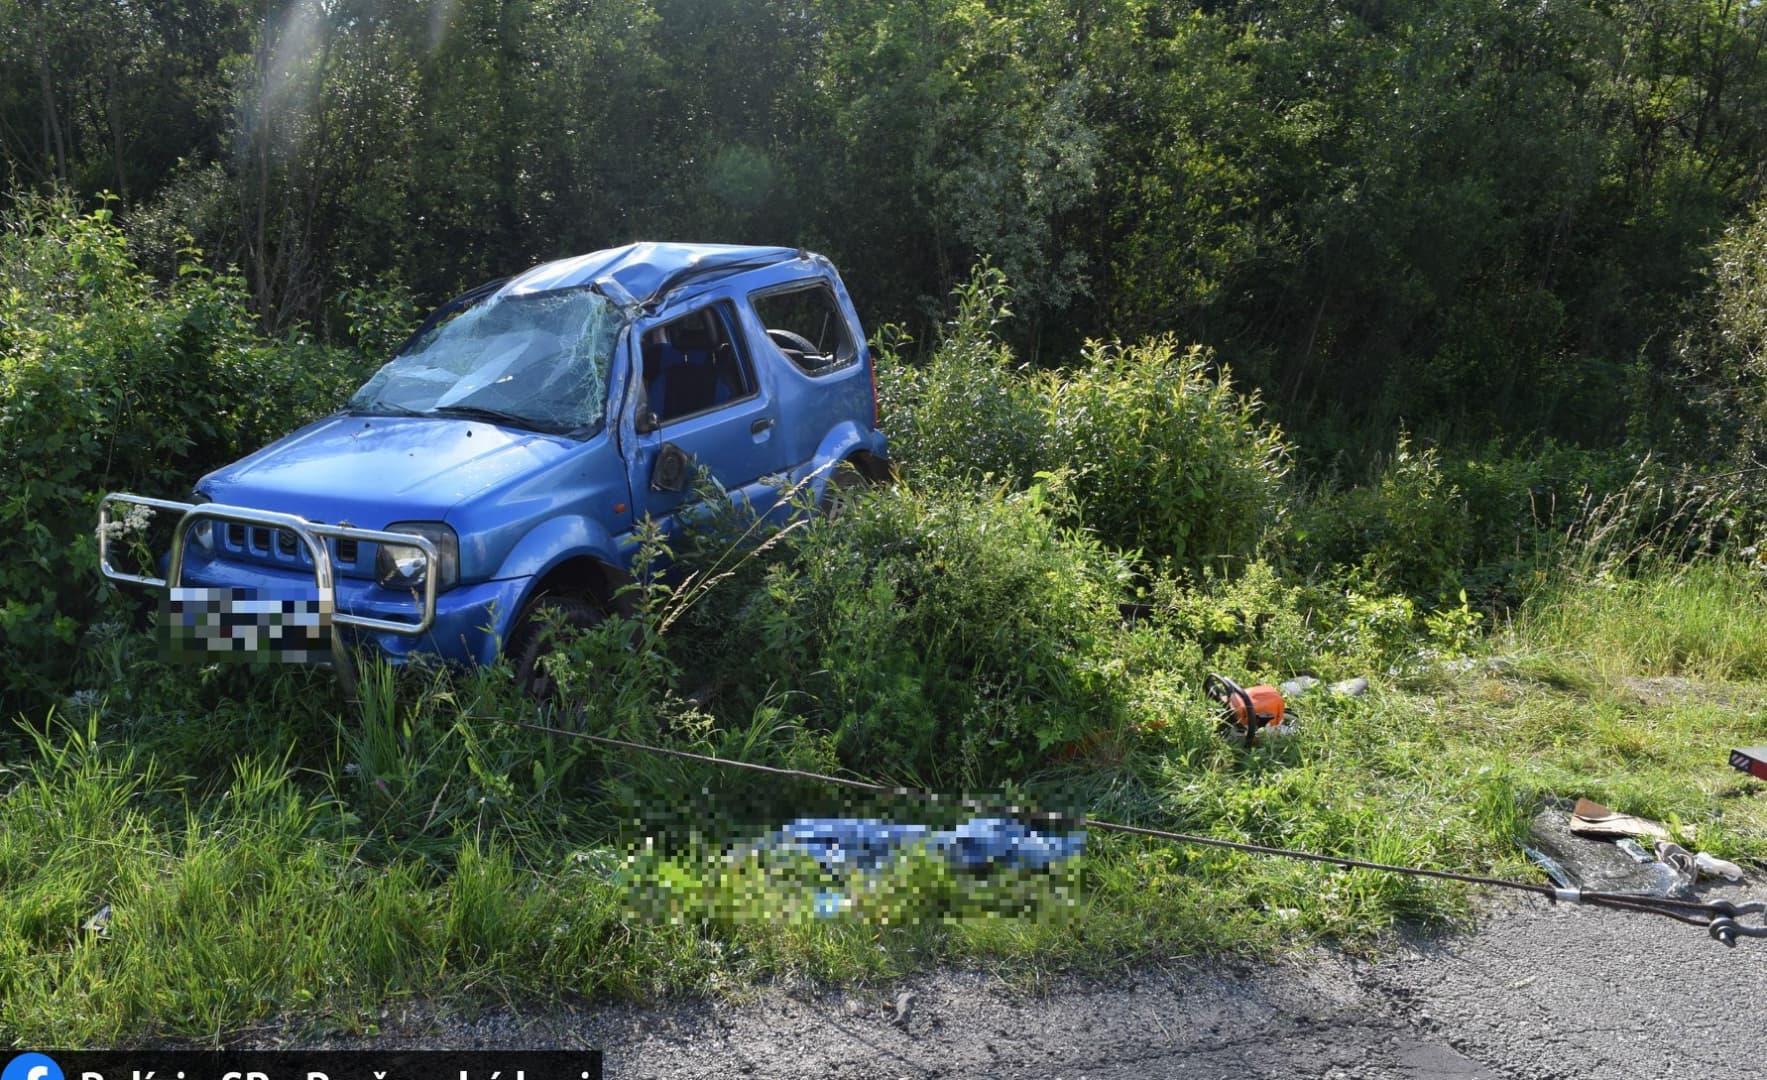 Halálos baleset: megcsúszott és felborult a Suzuki, életét vesztette a sofőr